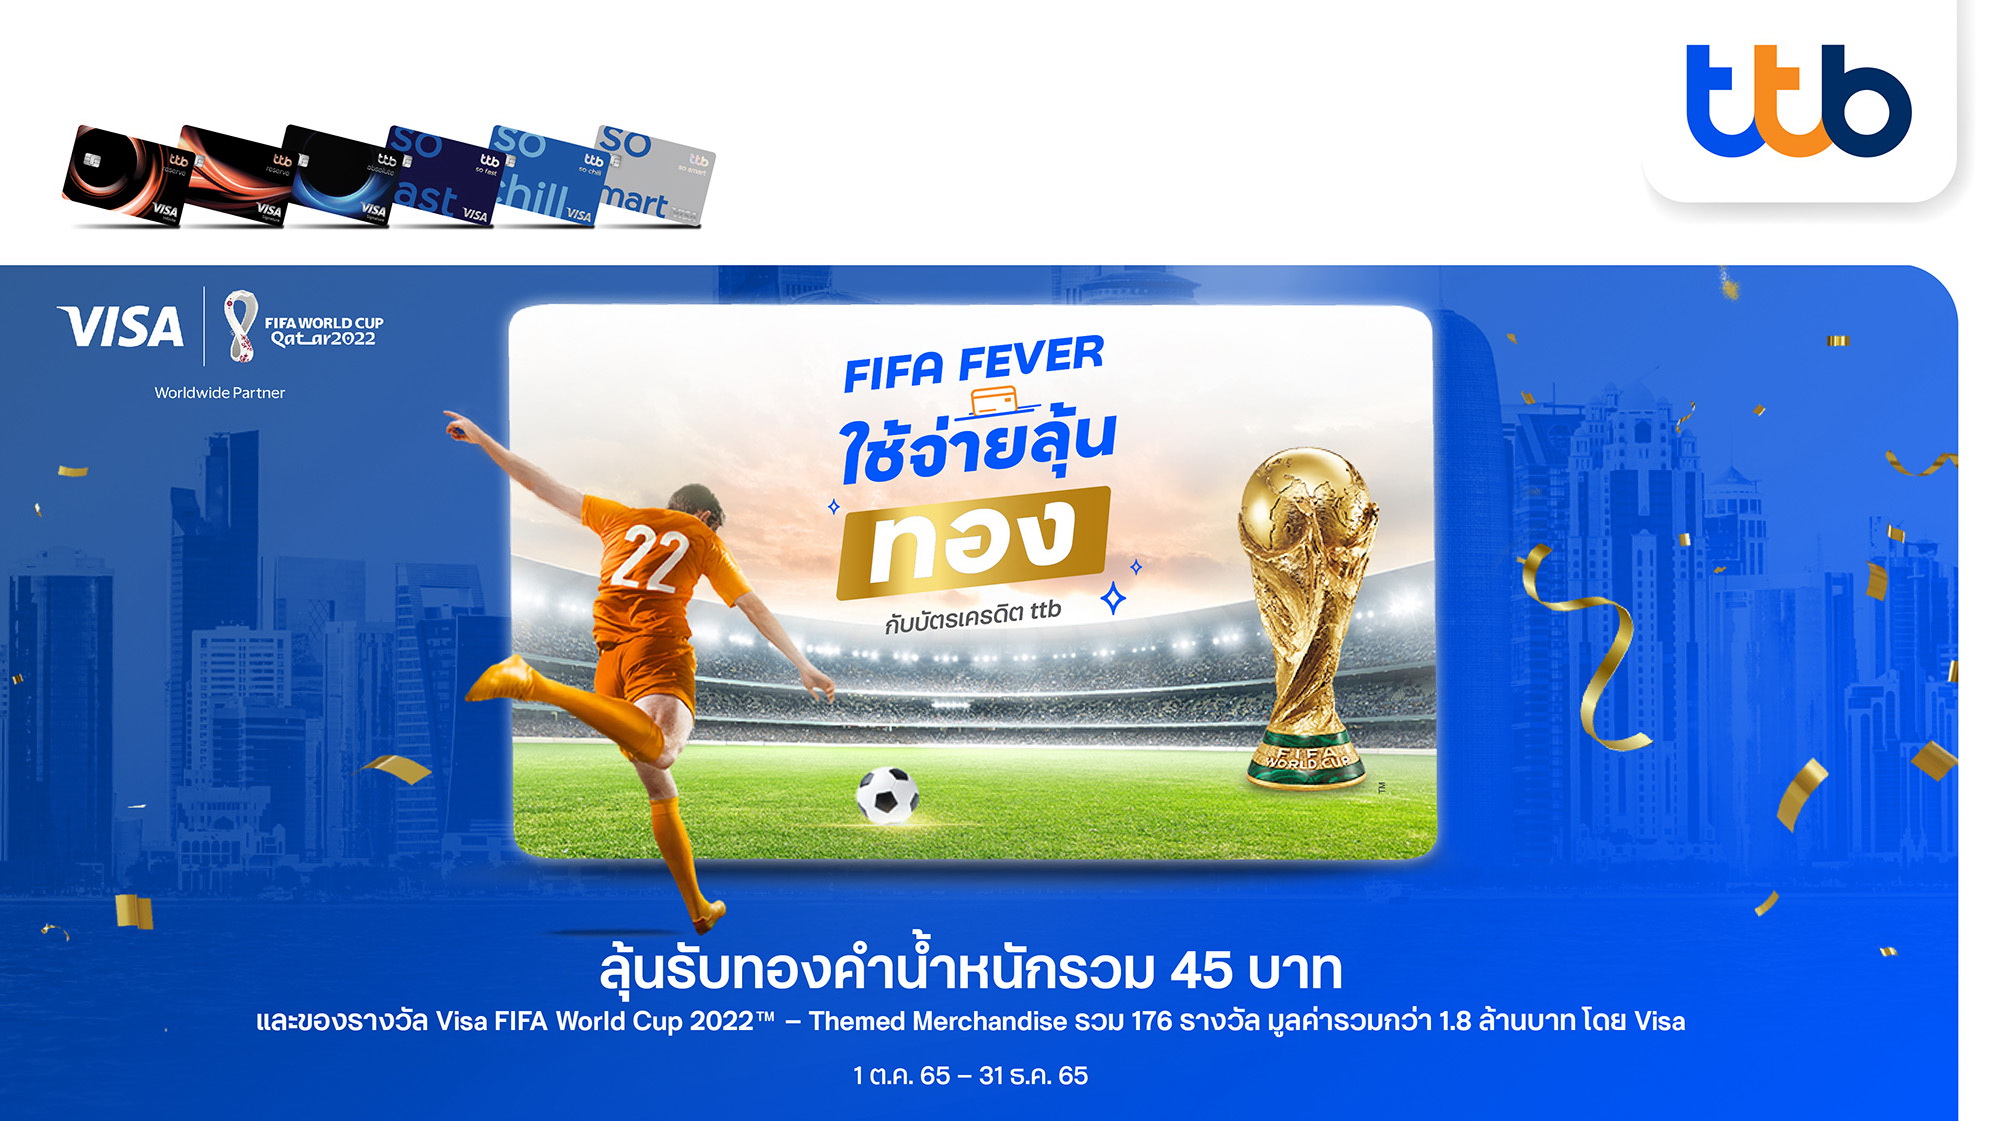 บัตรเครดิต ทีทีบี ร่วมฉลอง FIFA World Cup 2022TM   